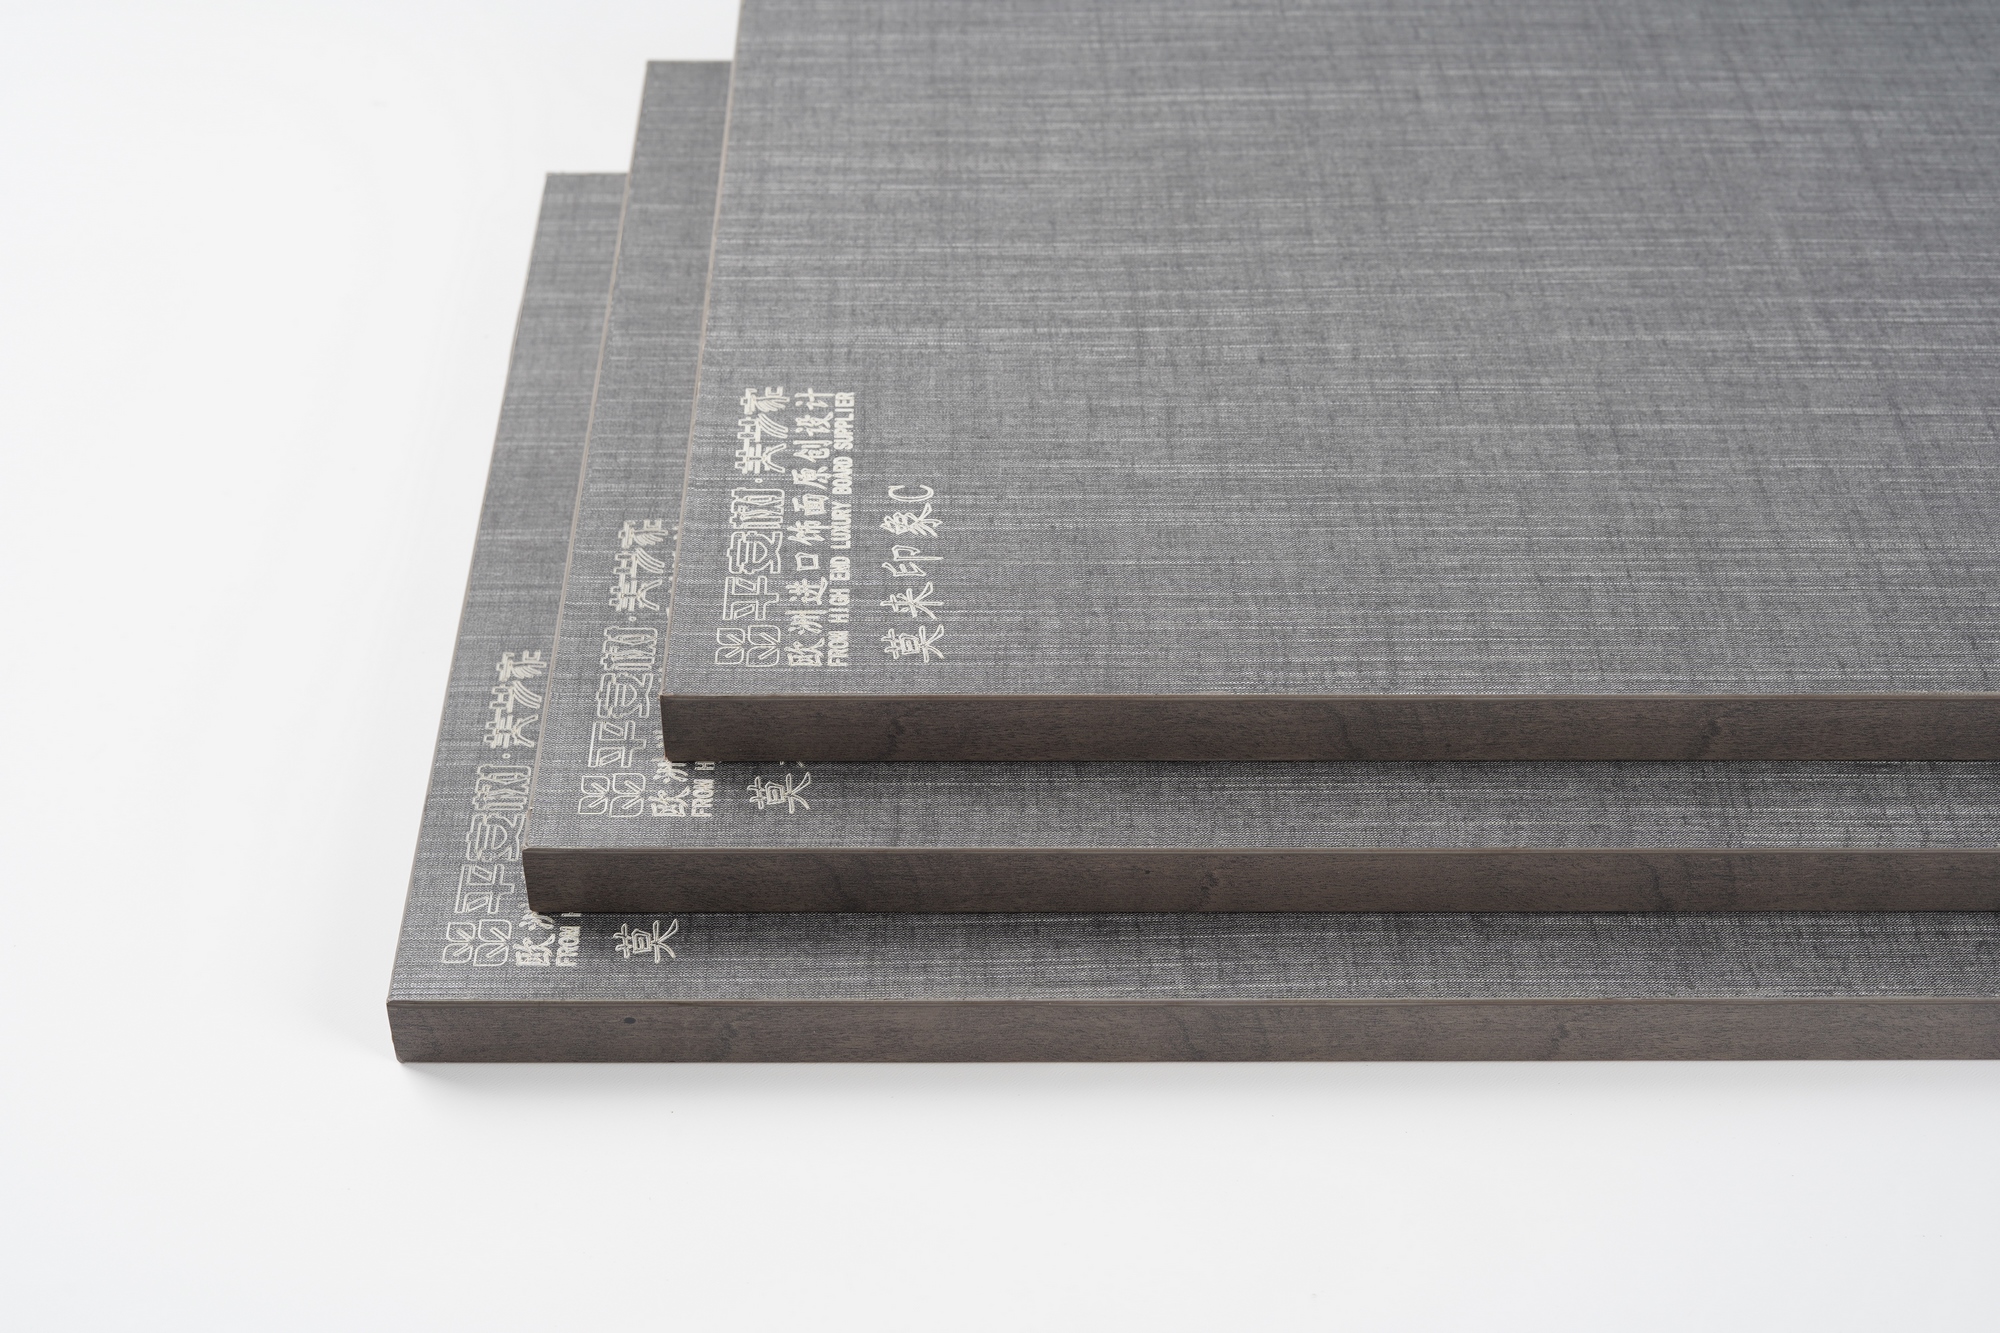 「布纹生态板」布纹面漆家具板-平安树全屋定制